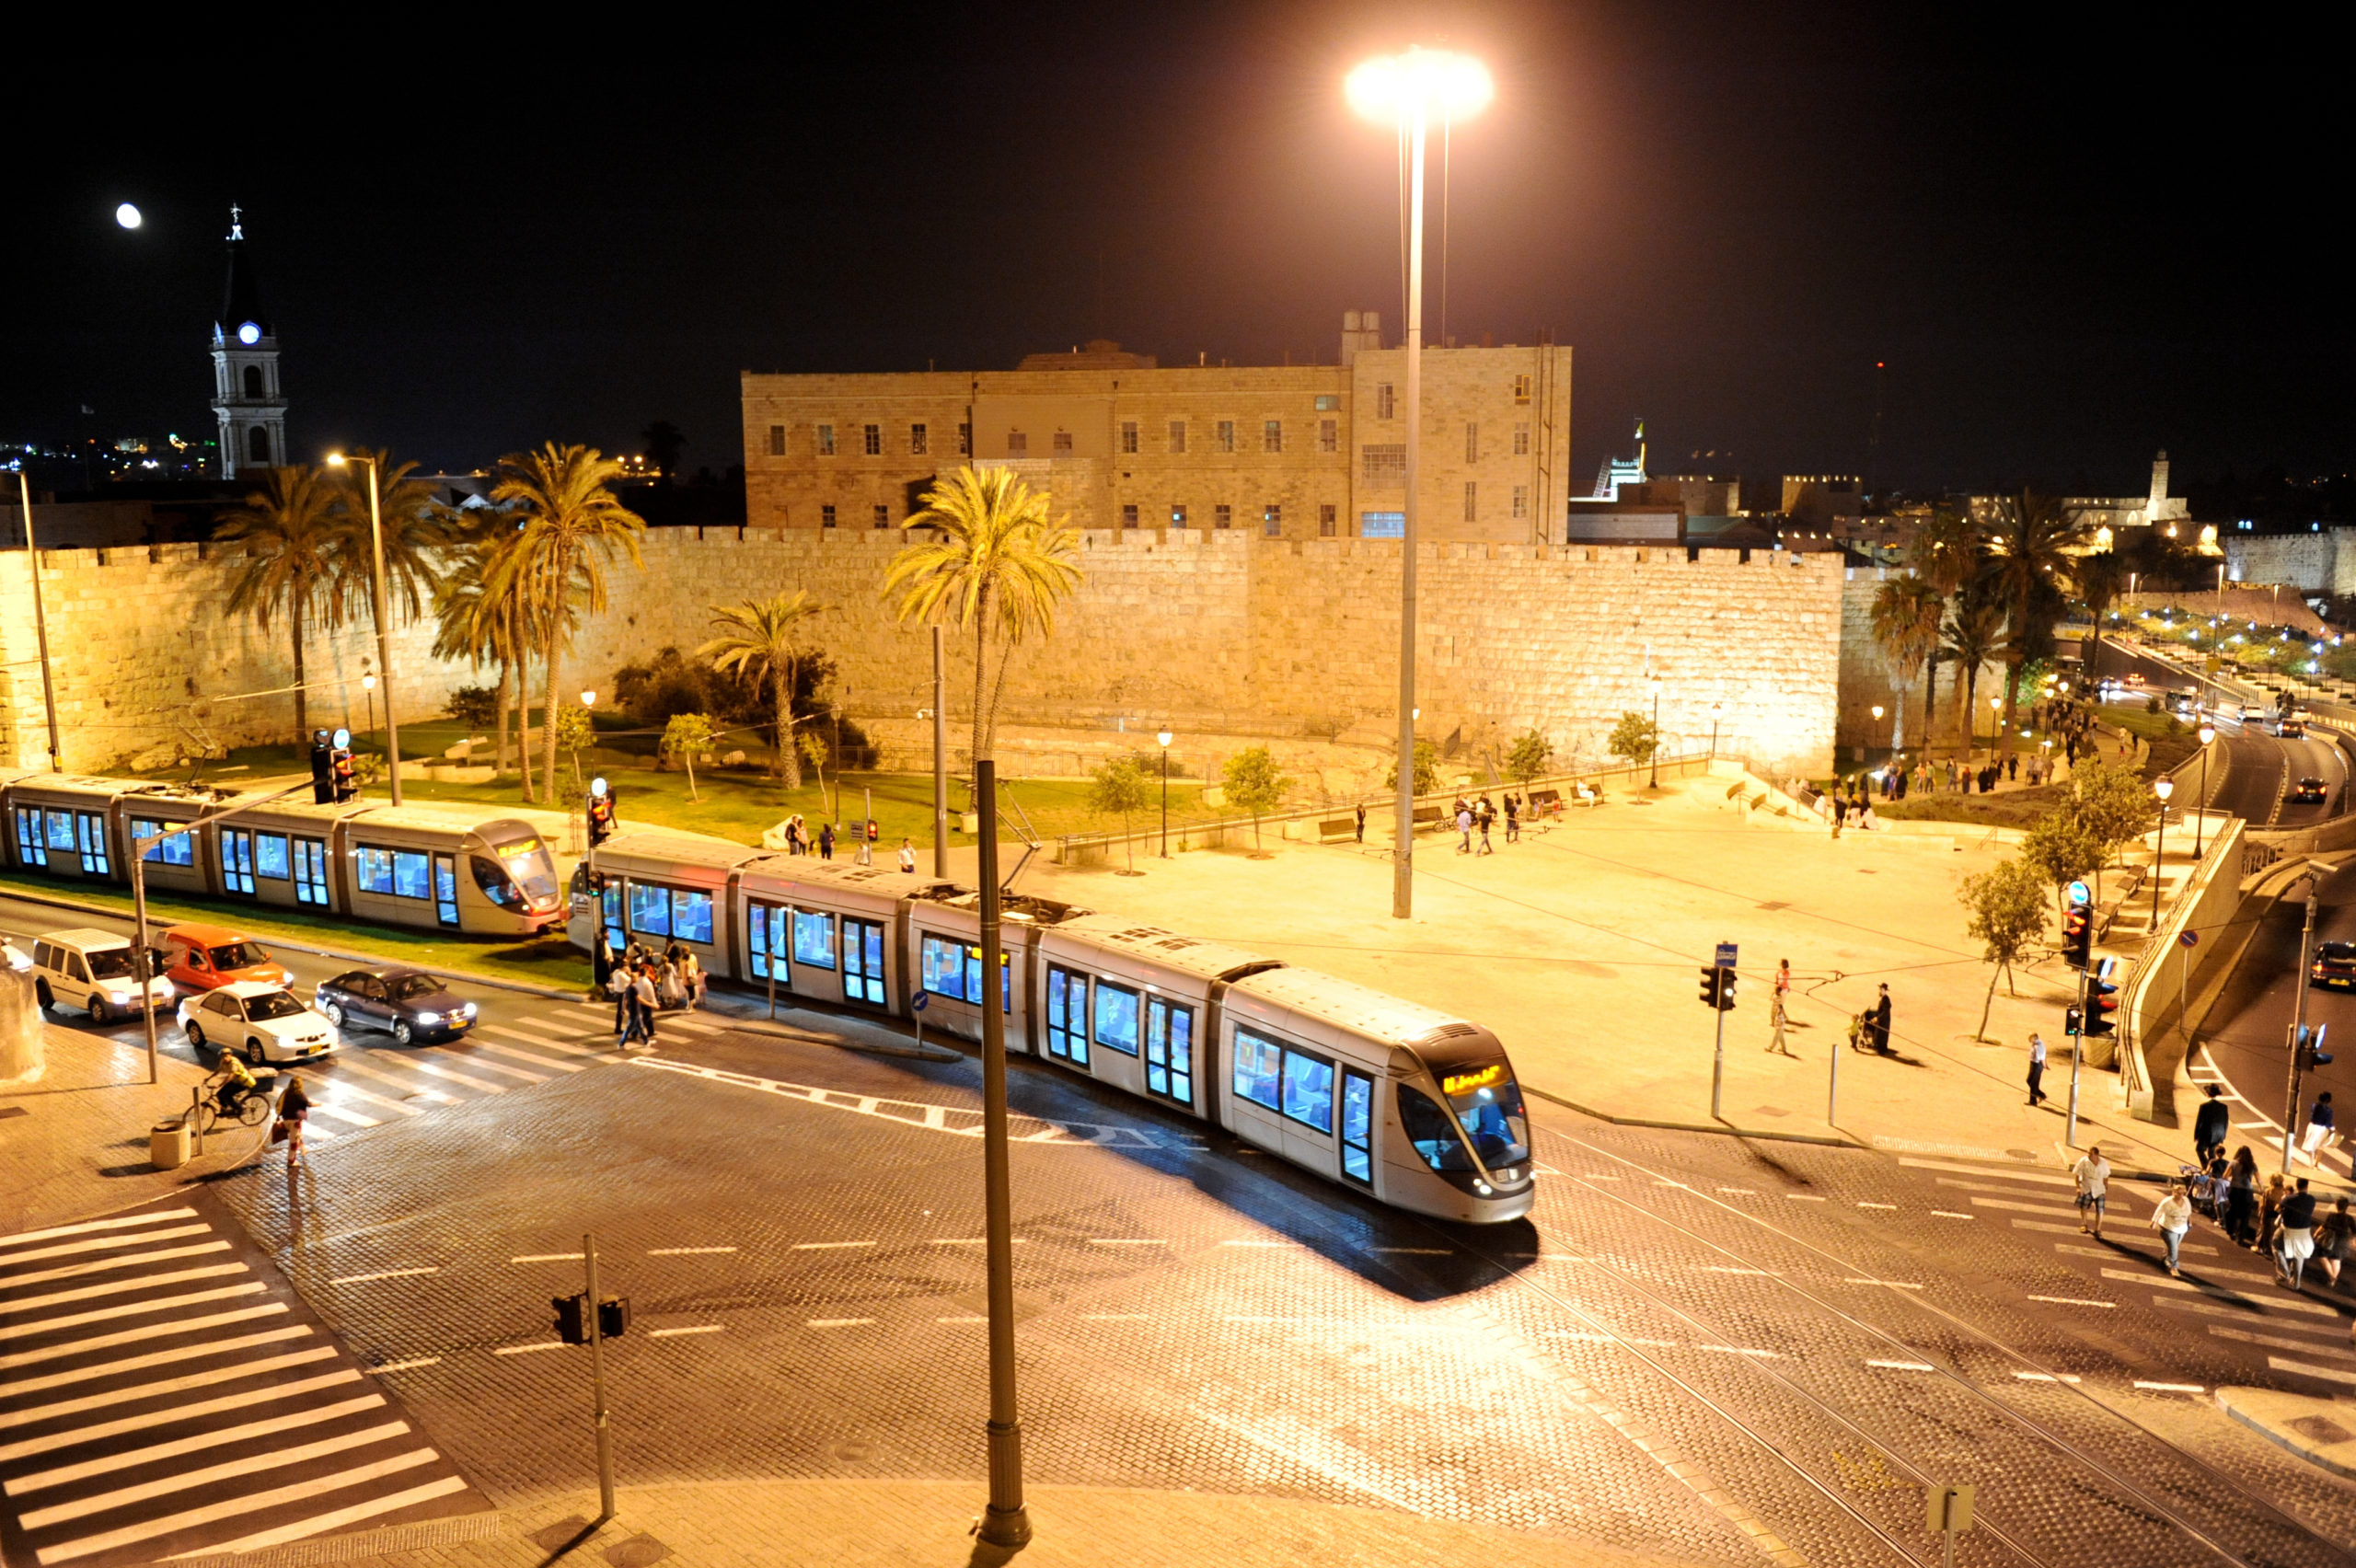 The Jerusalem Light Rail